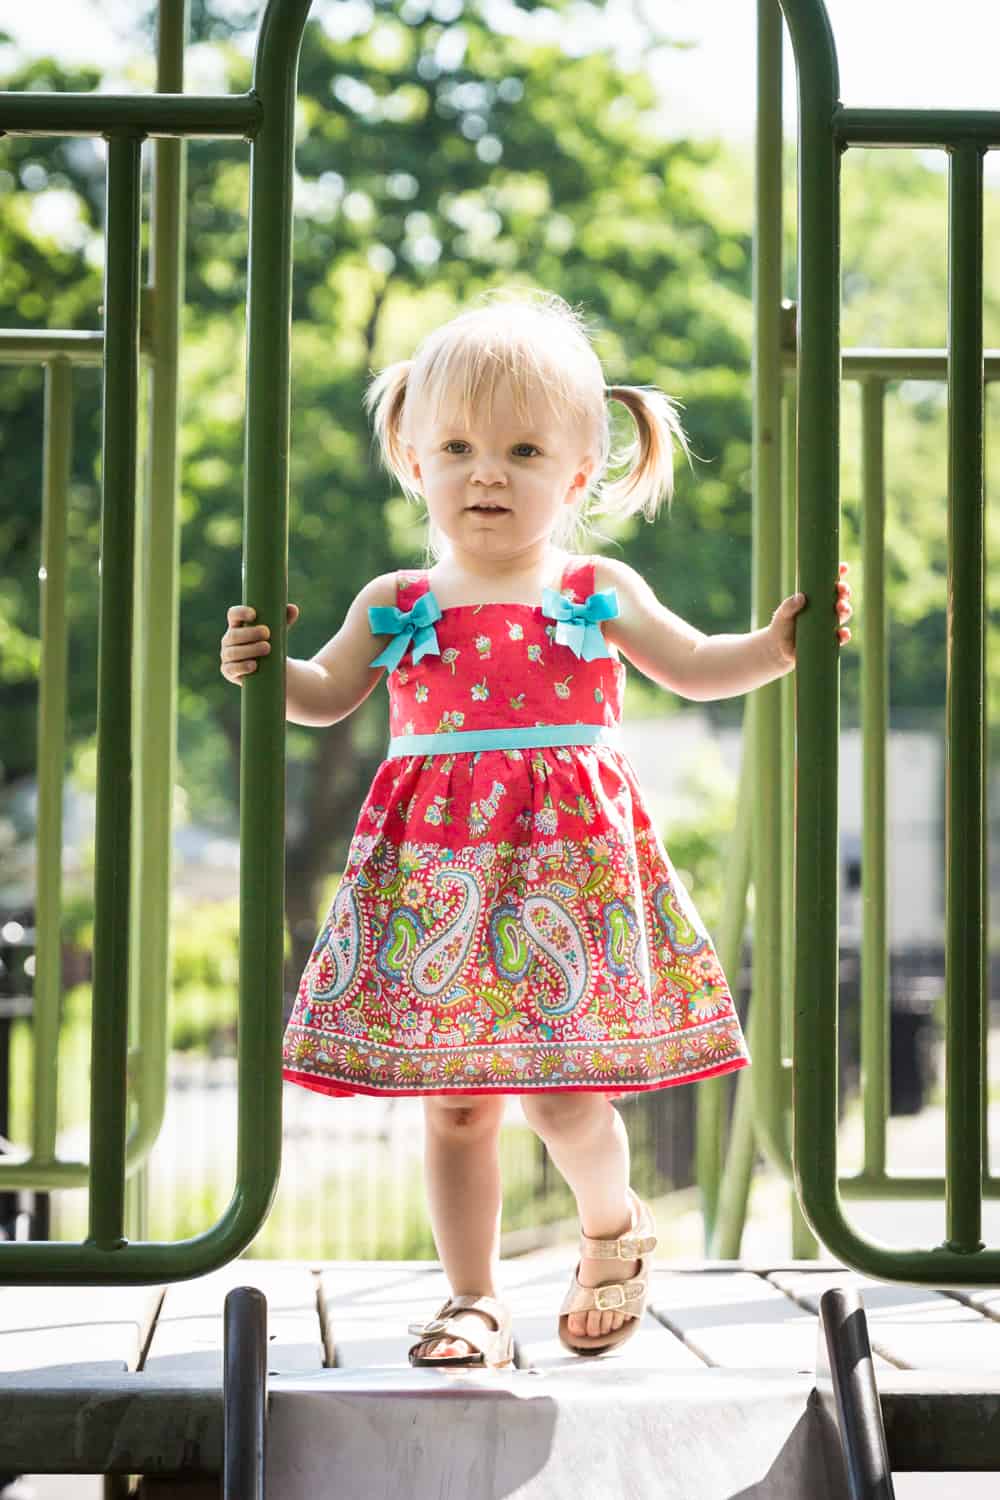 Little girl standing on slide in sunlight during a Forest Park family photo shoot